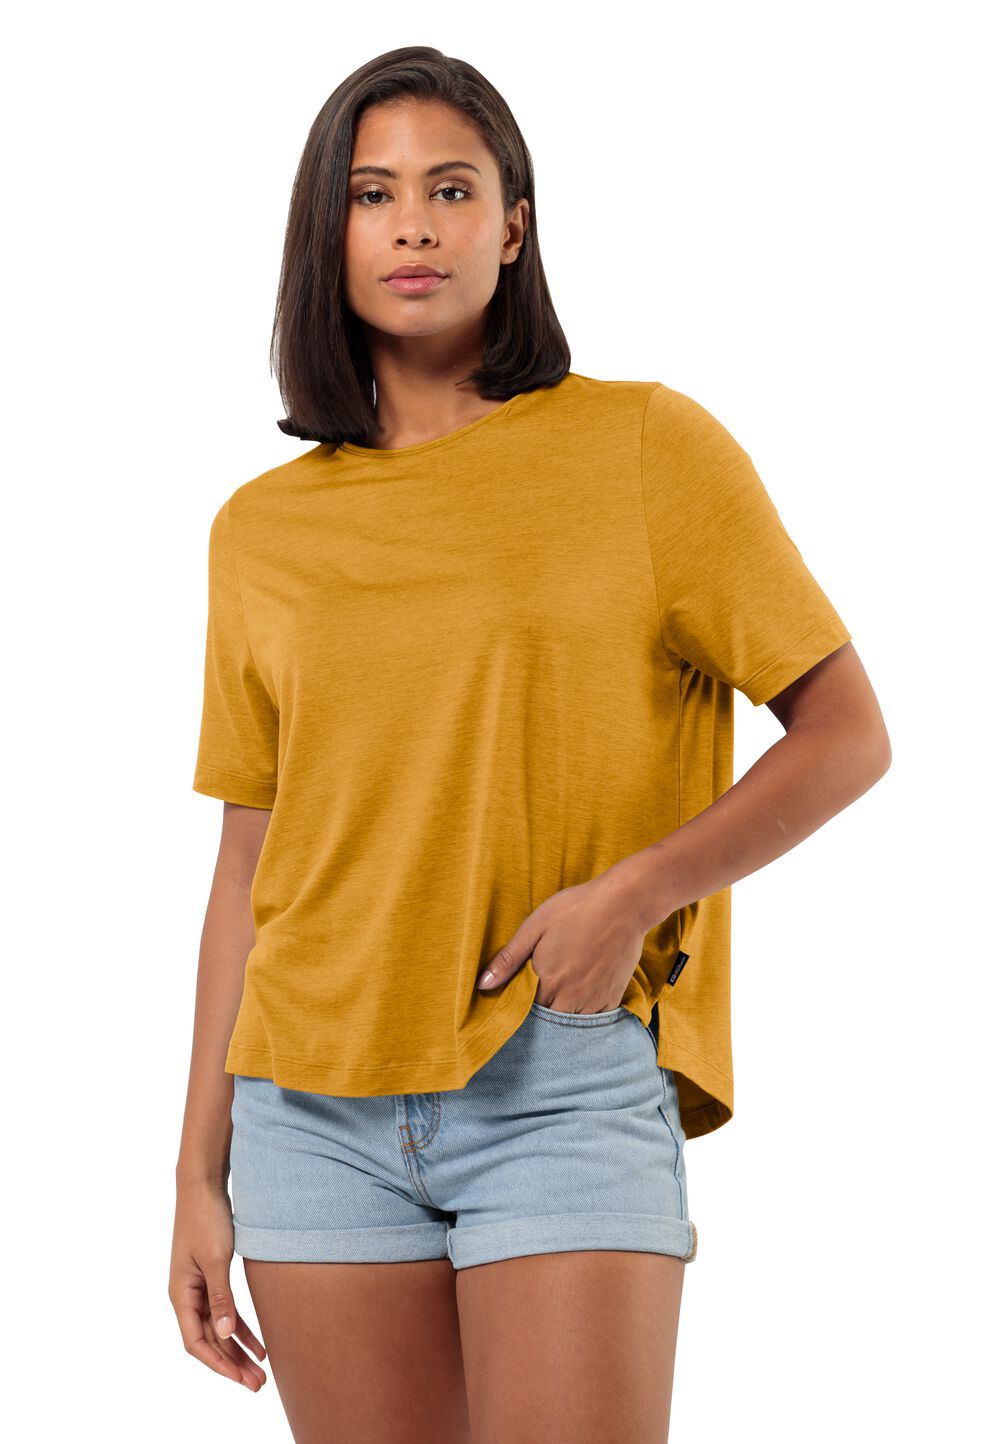 Jack Wolfskin Travel T-Shirt Women Functioneel shirt Dames XS bruin curry